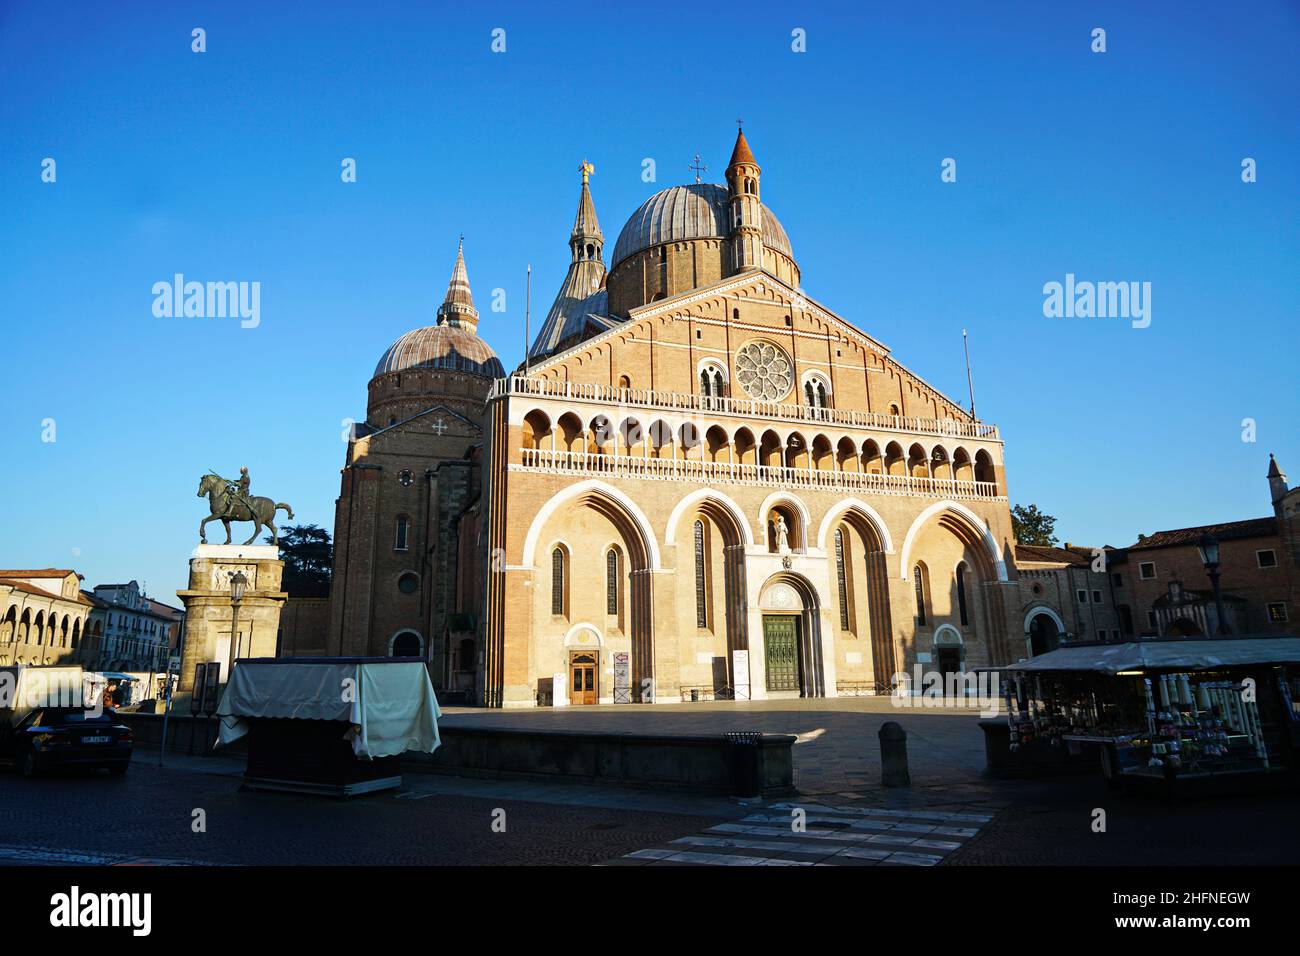 Päpstliche Basilika des Heiligen Antonius von Padua (Basilica di sant'antonio di padova) Padua, Italien - Januar 2022 Stockfoto